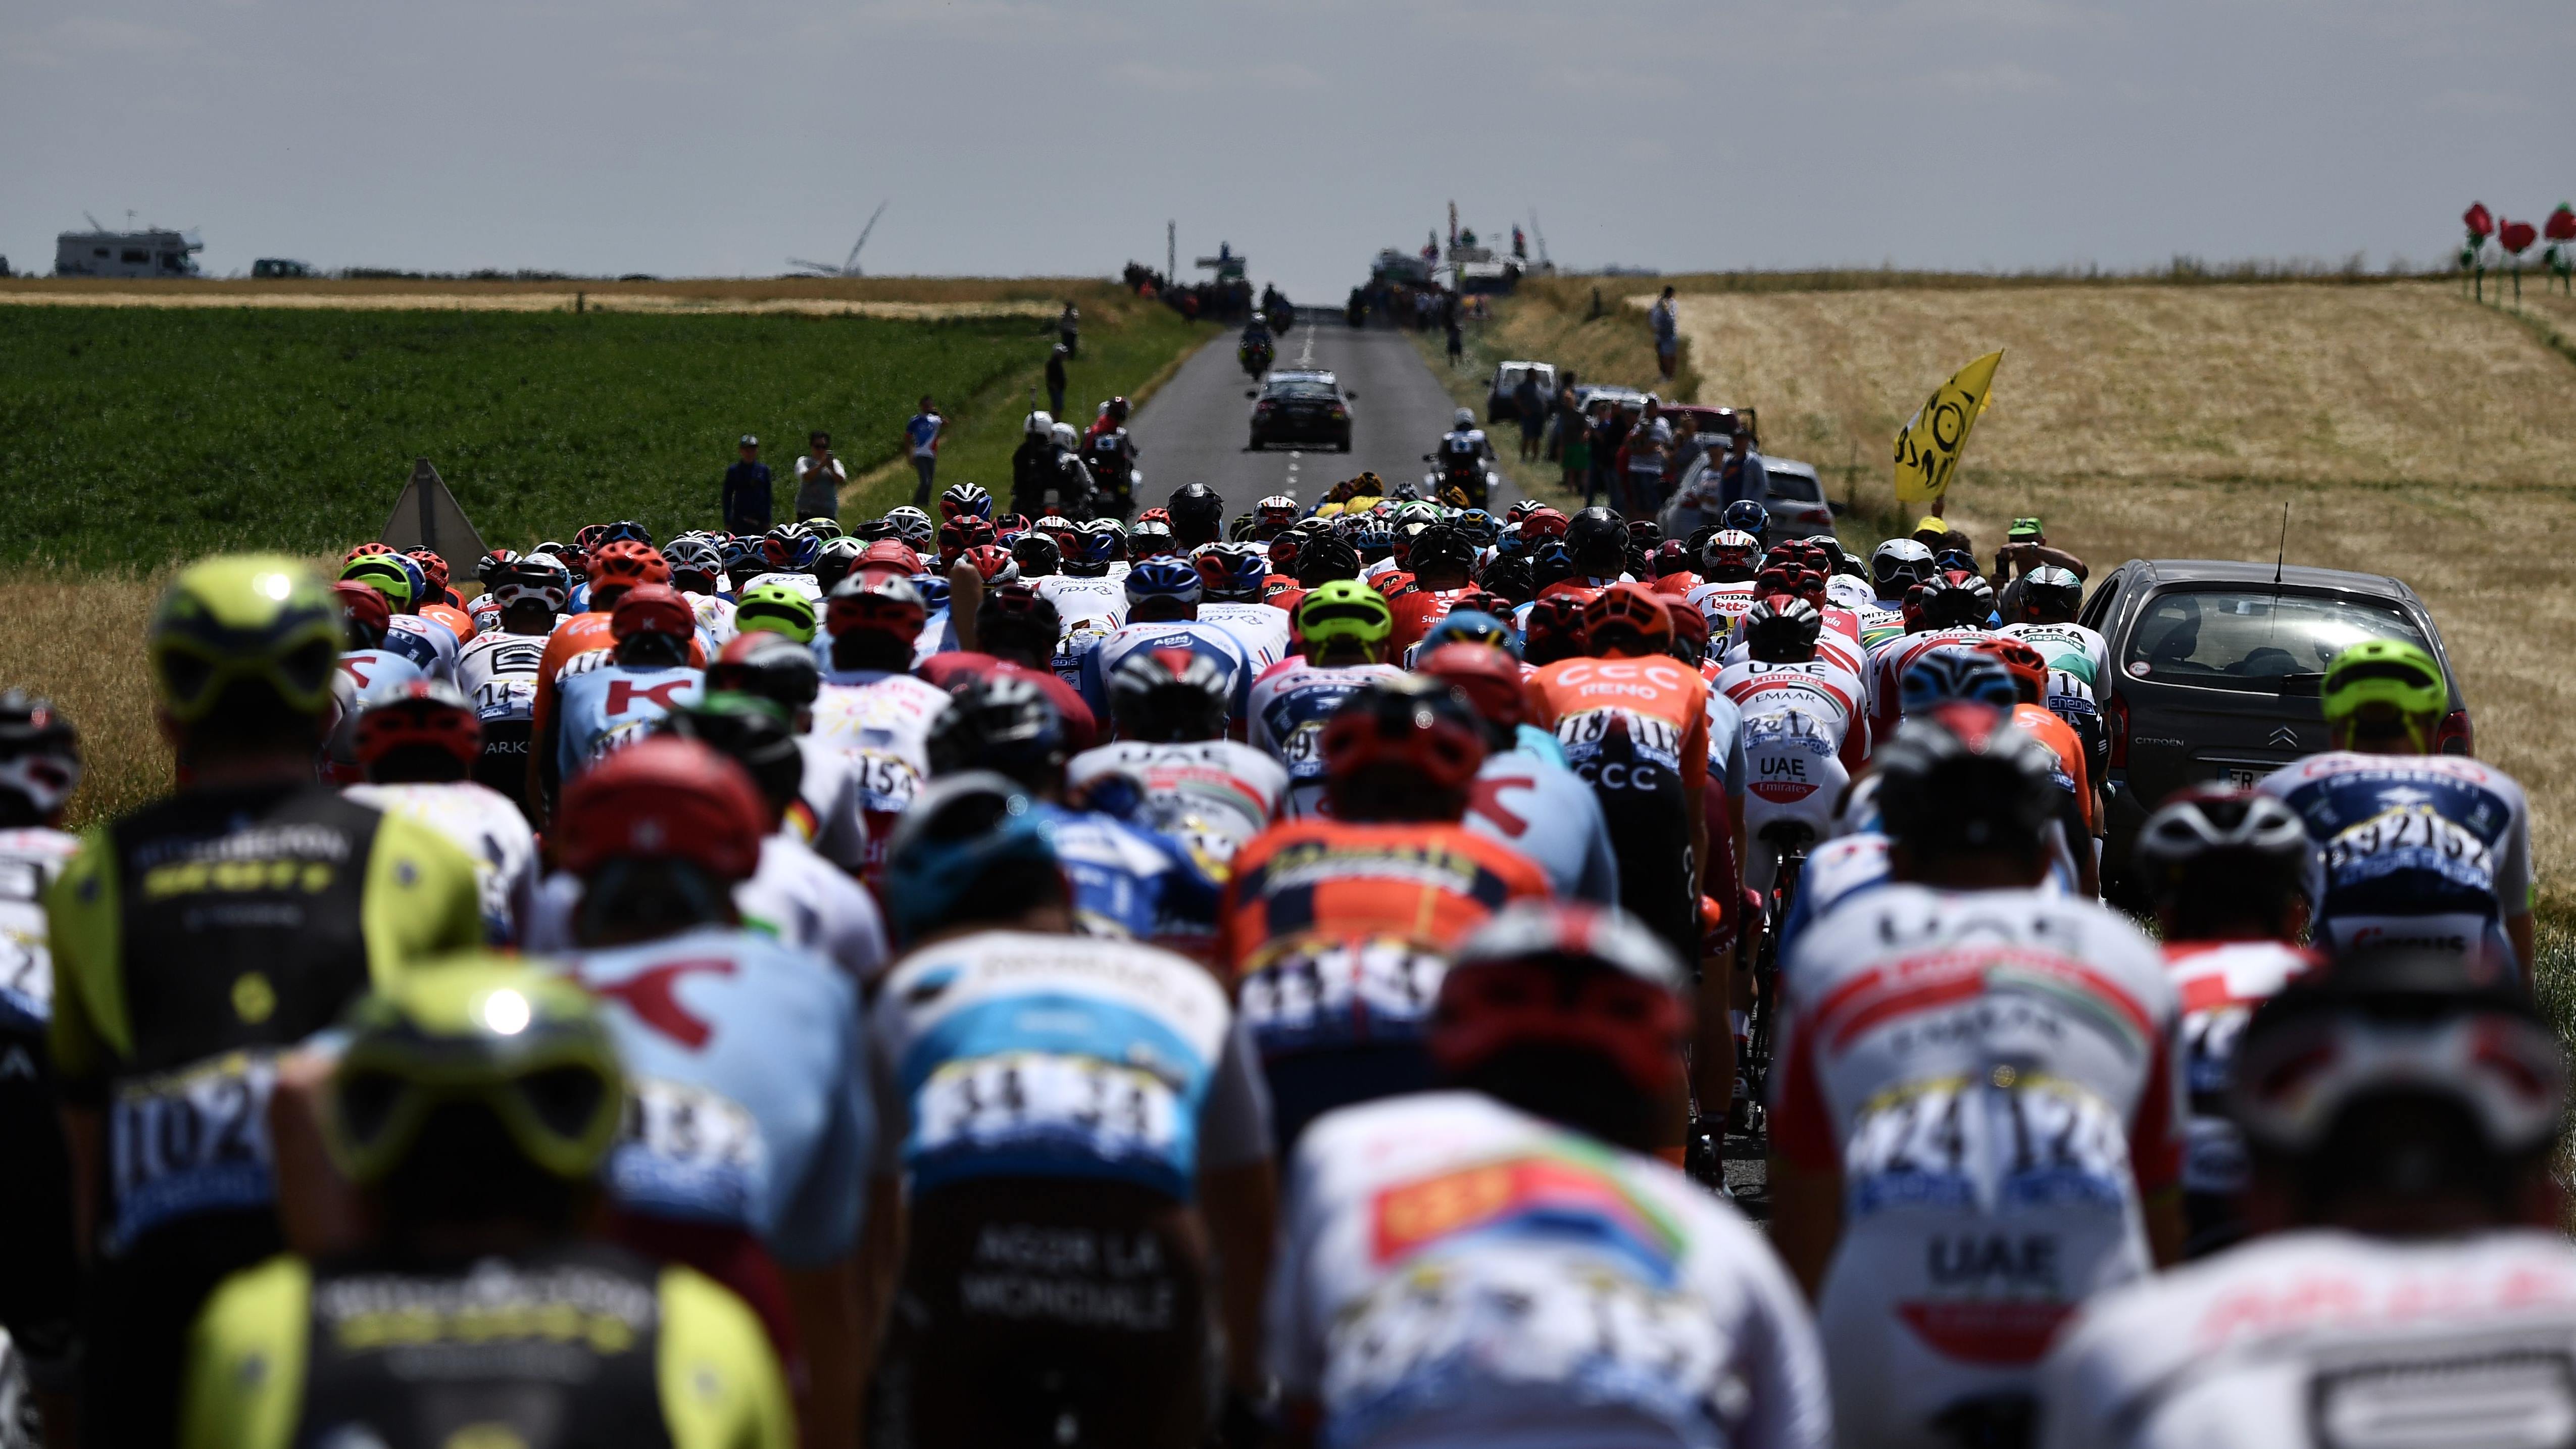 Tour de france 2019 stage 4 odds